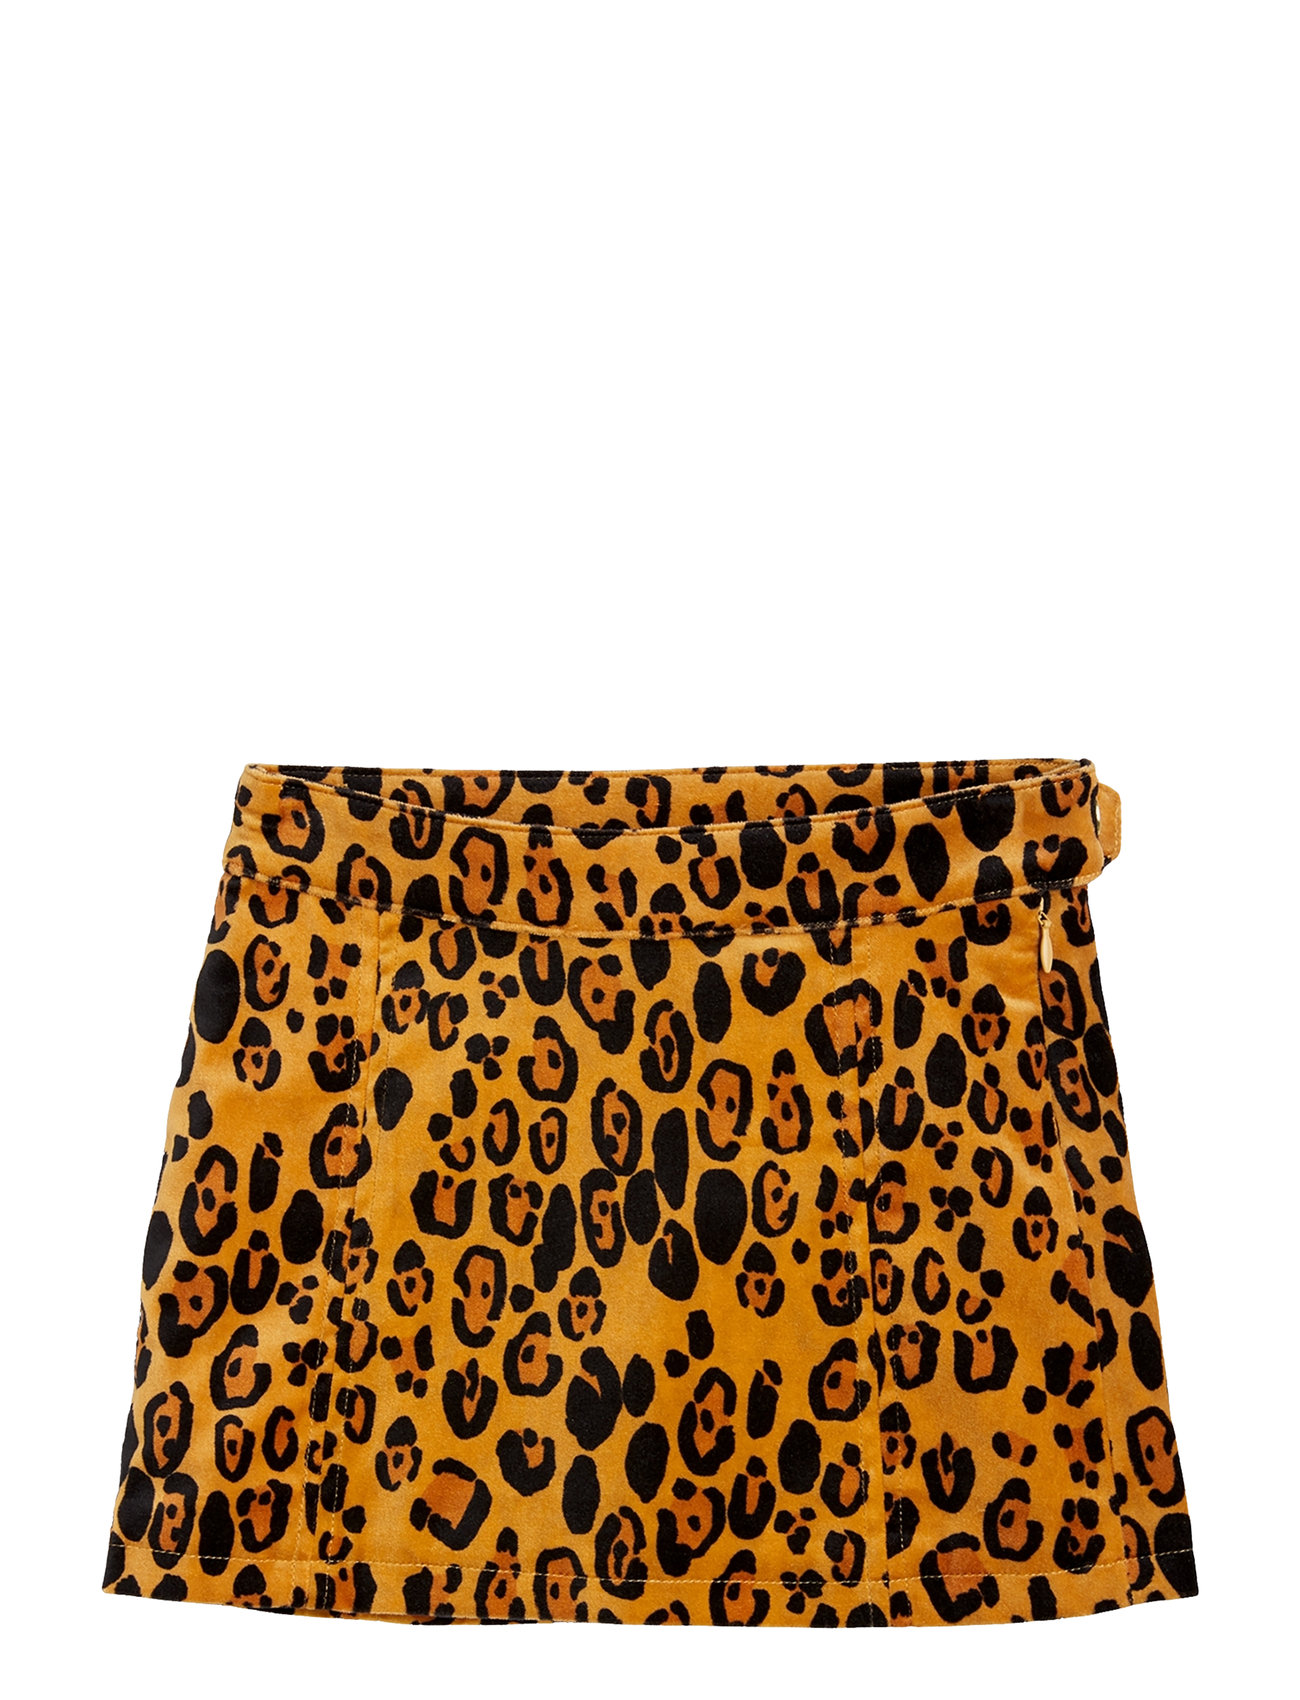 Leopard Aop Velvet Skirt Dresses & Skirts Skirts Short Skirts Orange Mini Rodini